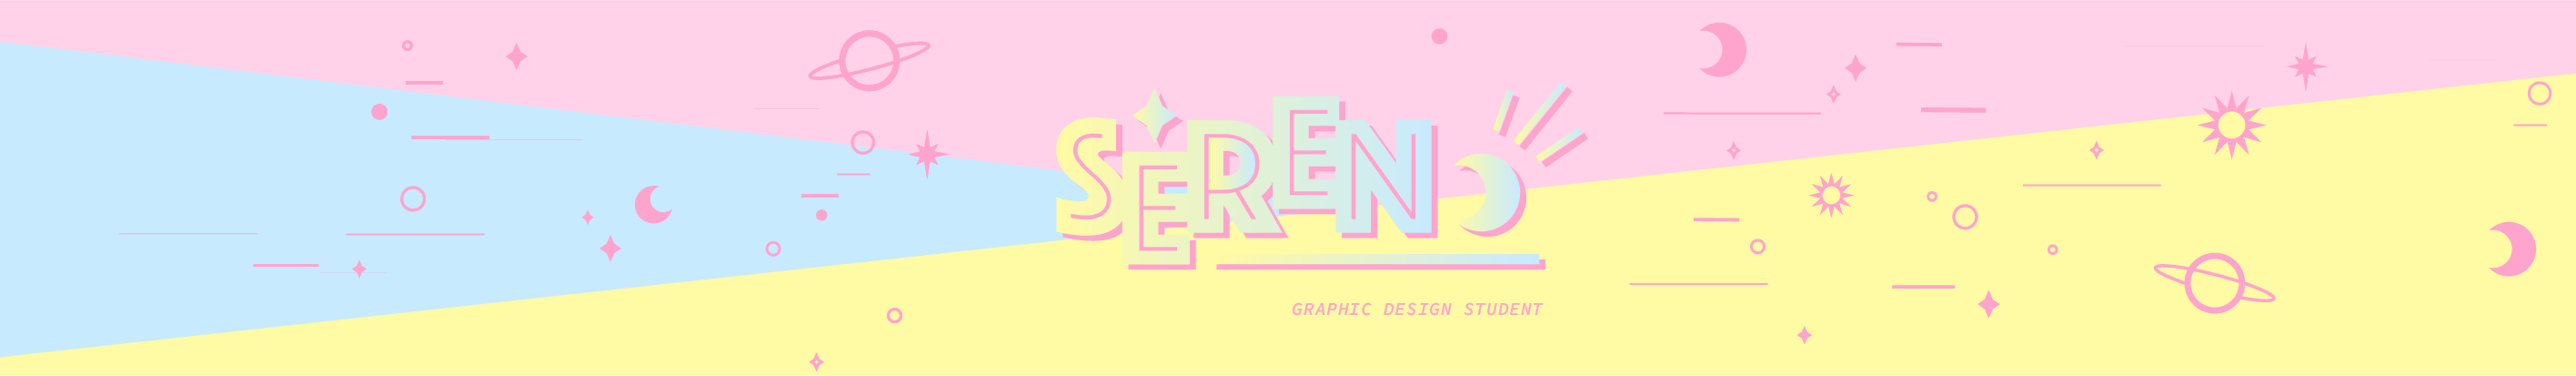 Seren Le's profile banner